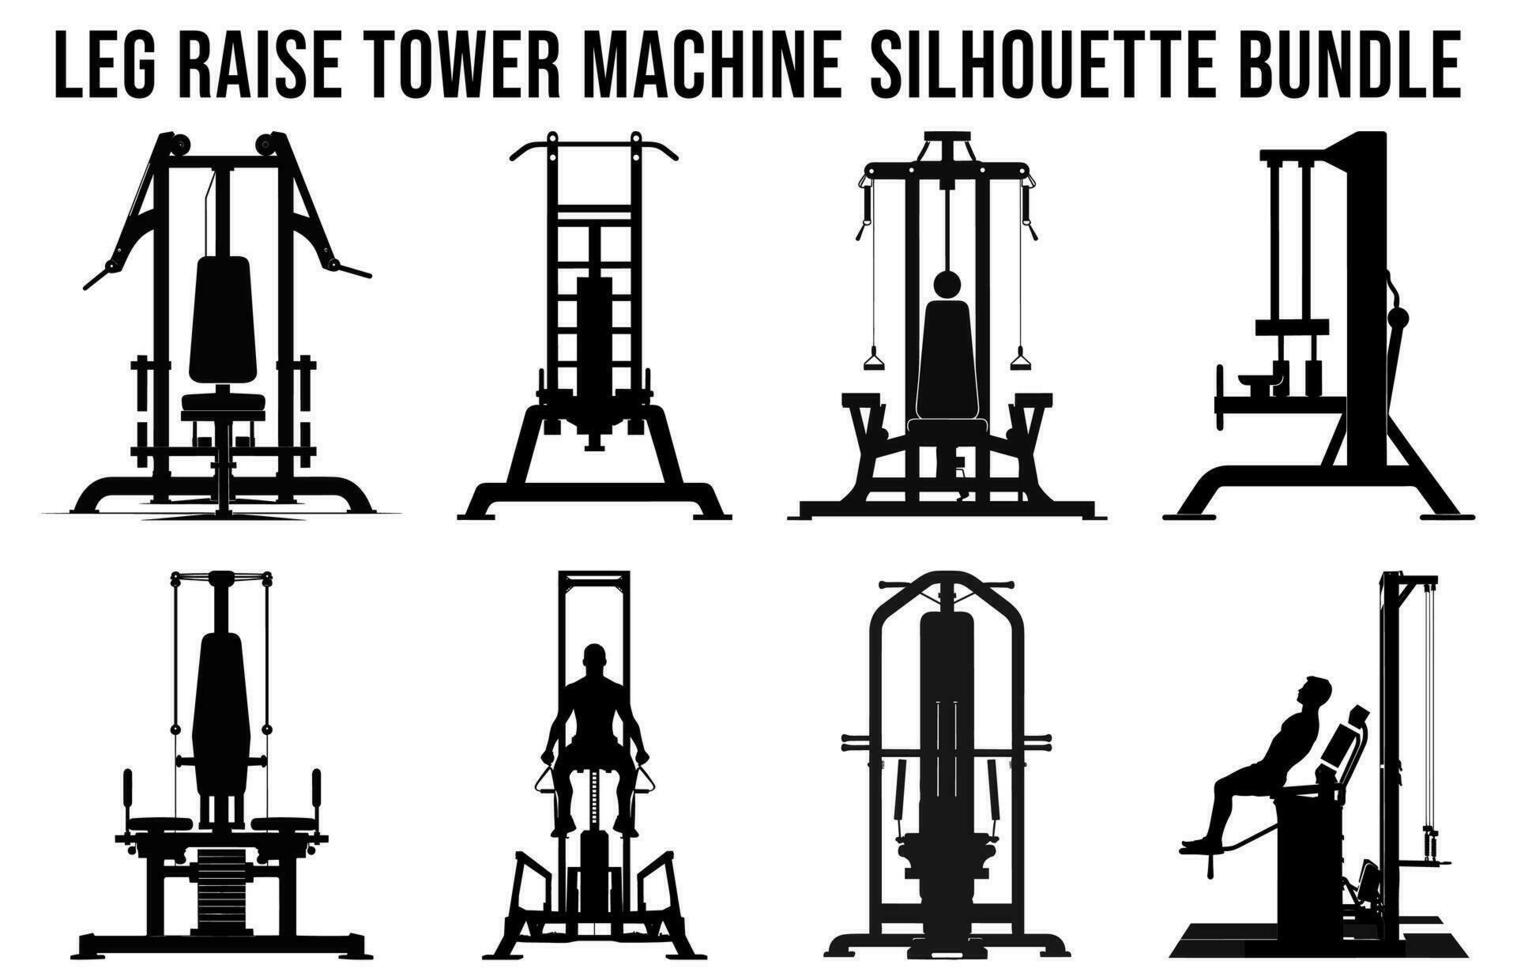 vrij Sportschool machine silhouetten vector bundel, geschiktheid element machine illustratie bundel